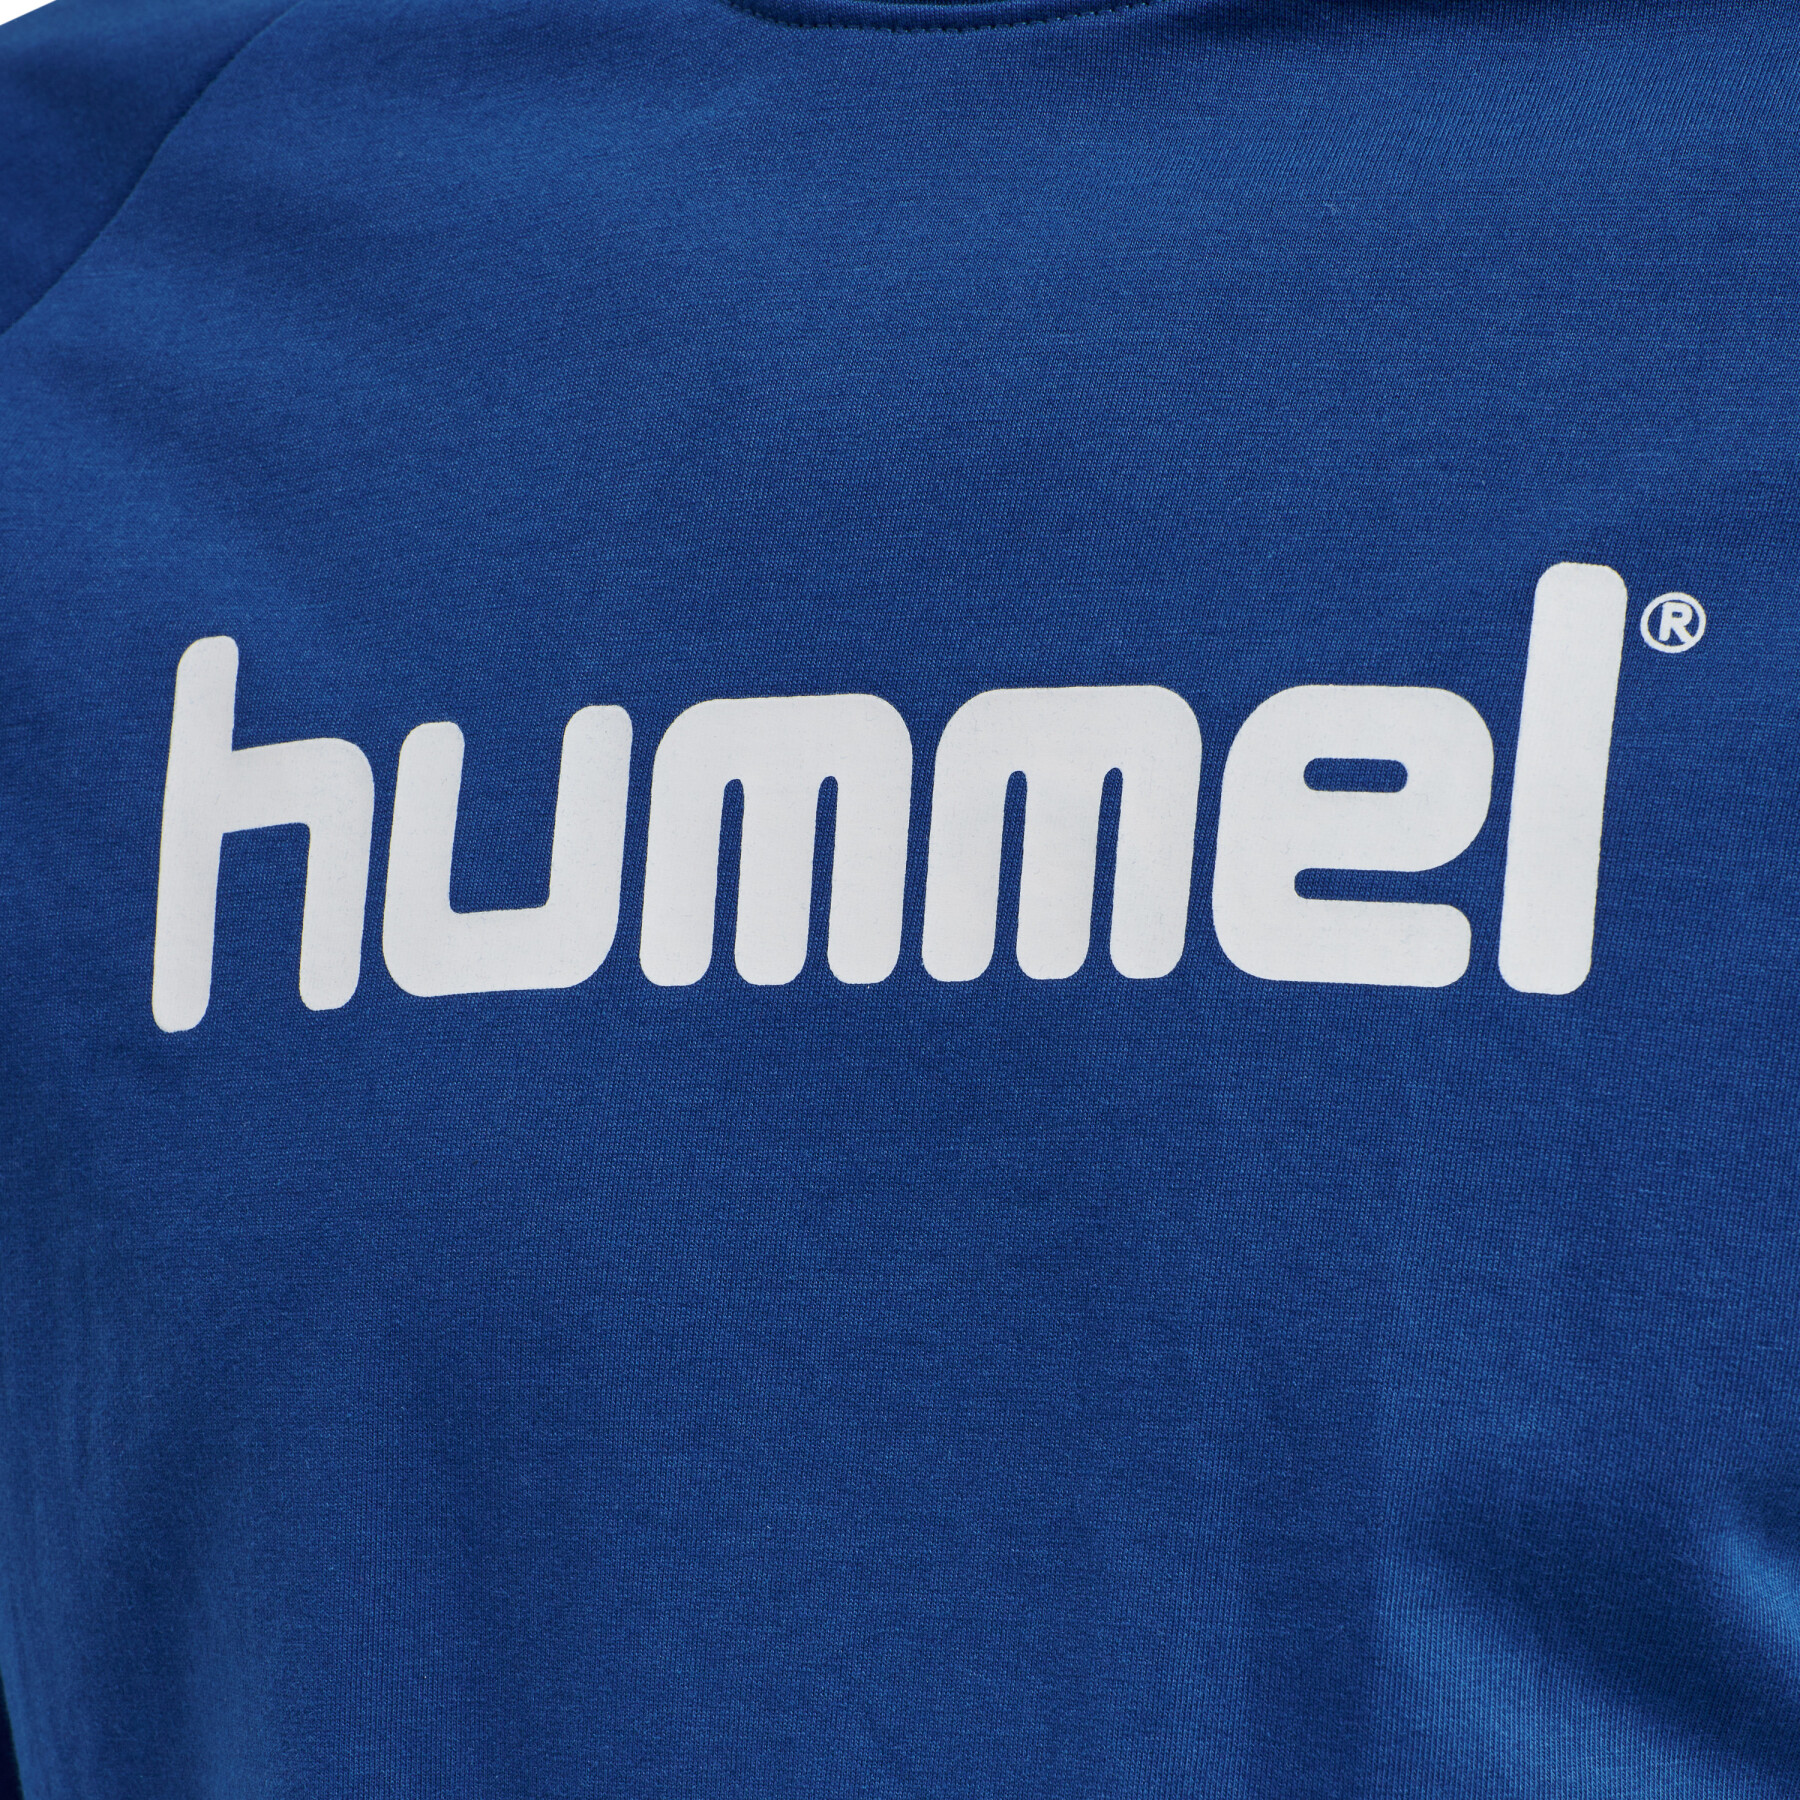 - Hummel Sweatshirt Logo Brands woman Handball - Hummel - wear Cotton